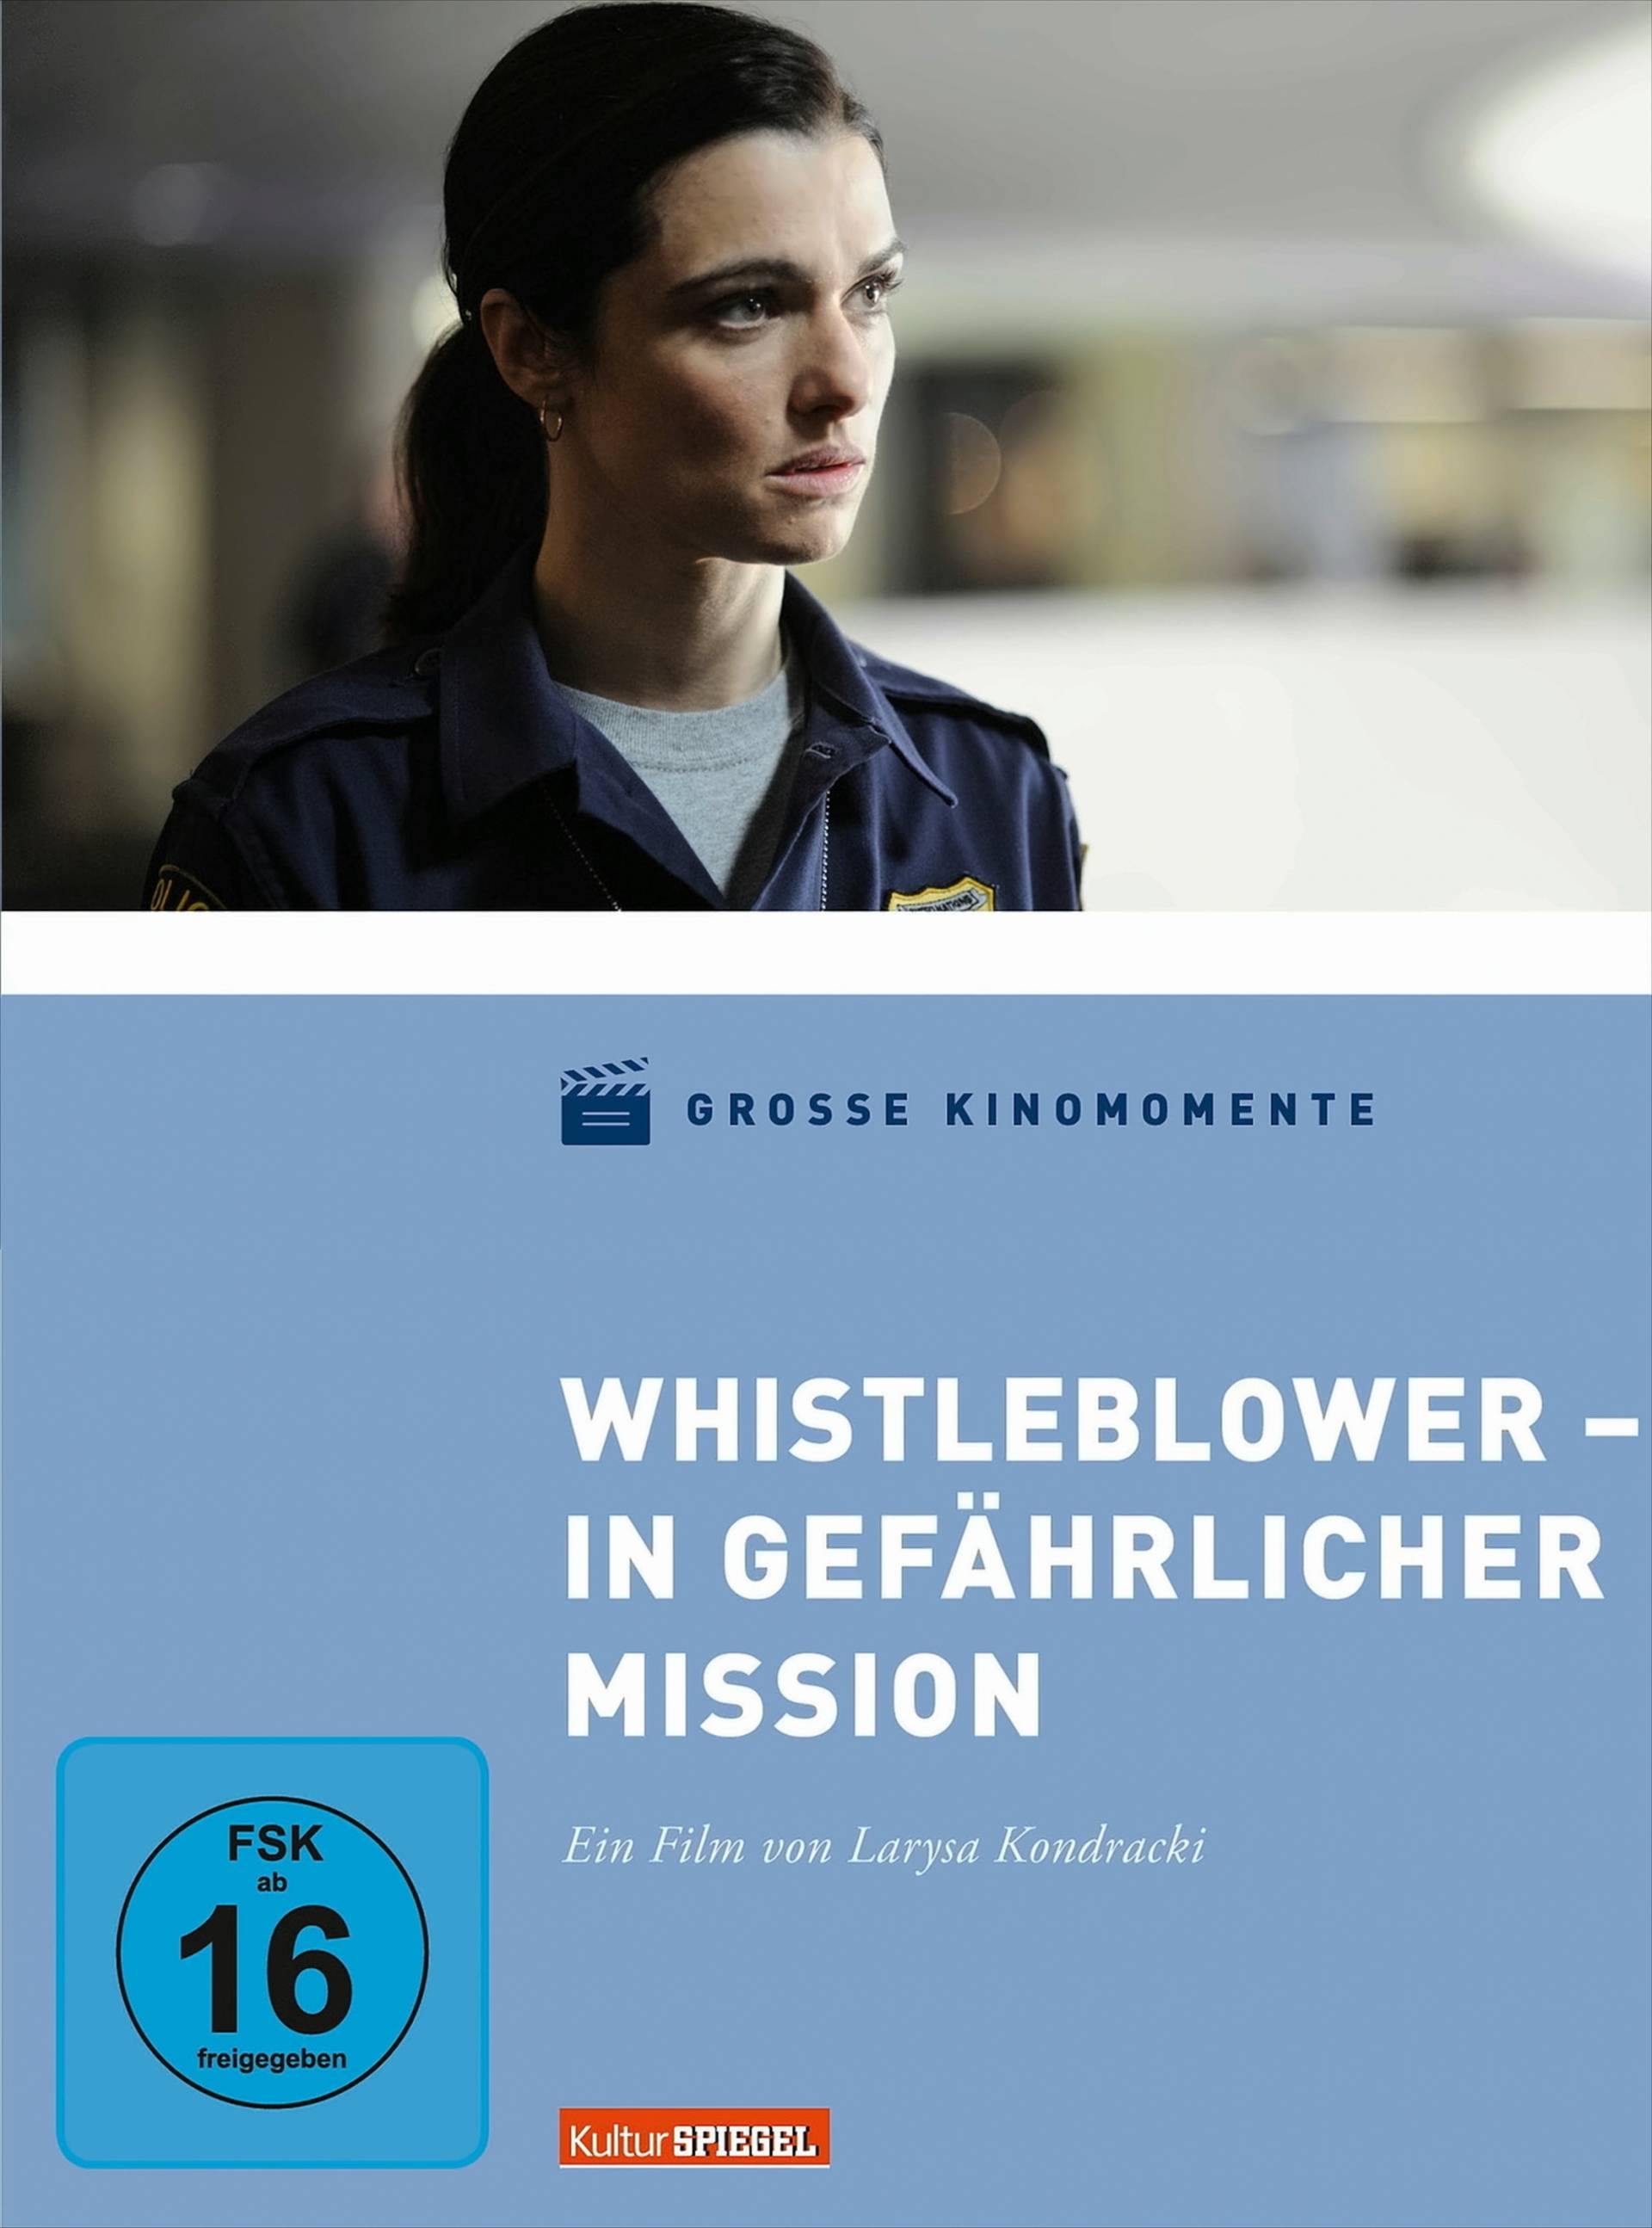 Whistleblower - In gefährlicher Mission von Universum Film